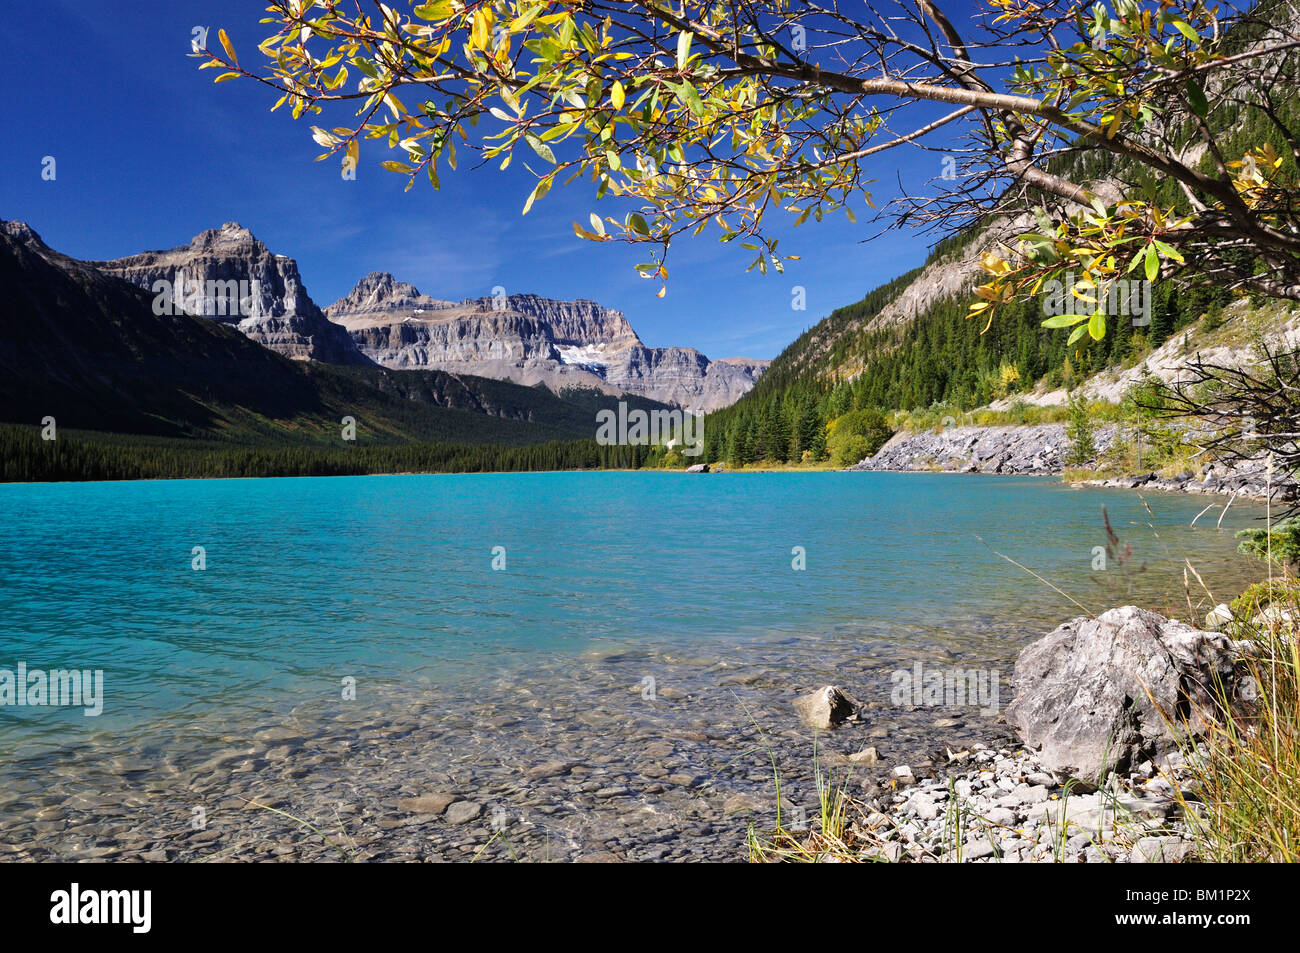 Le Lac de la sauvagine, Banff National Park, site du patrimoine mondial de l'UNESCO, des montagnes Rocheuses, Alberta, Canada, Amérique du Nord Banque D'Images